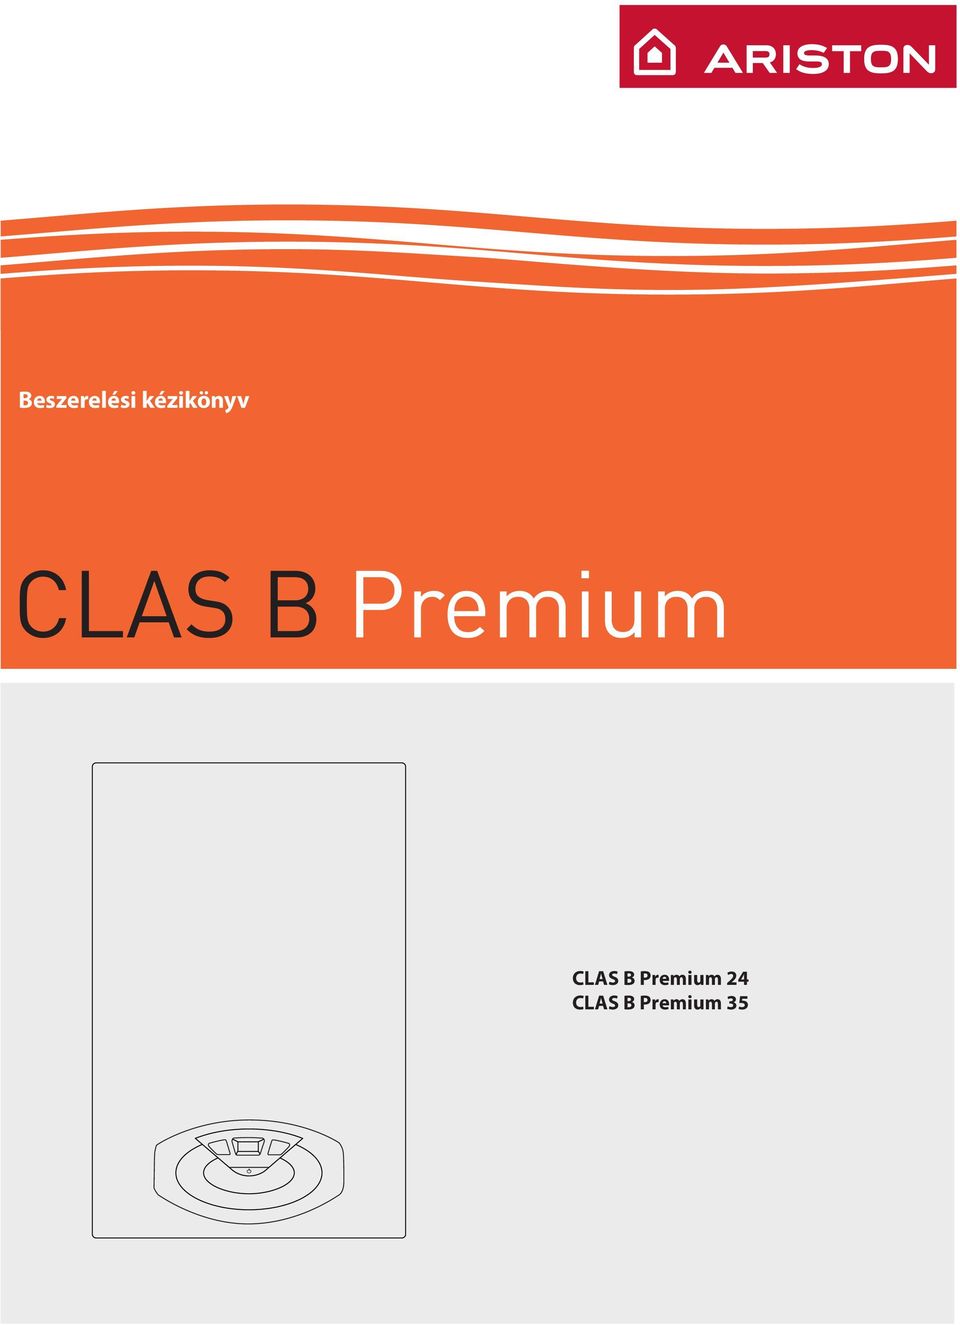 Premium CLAS B